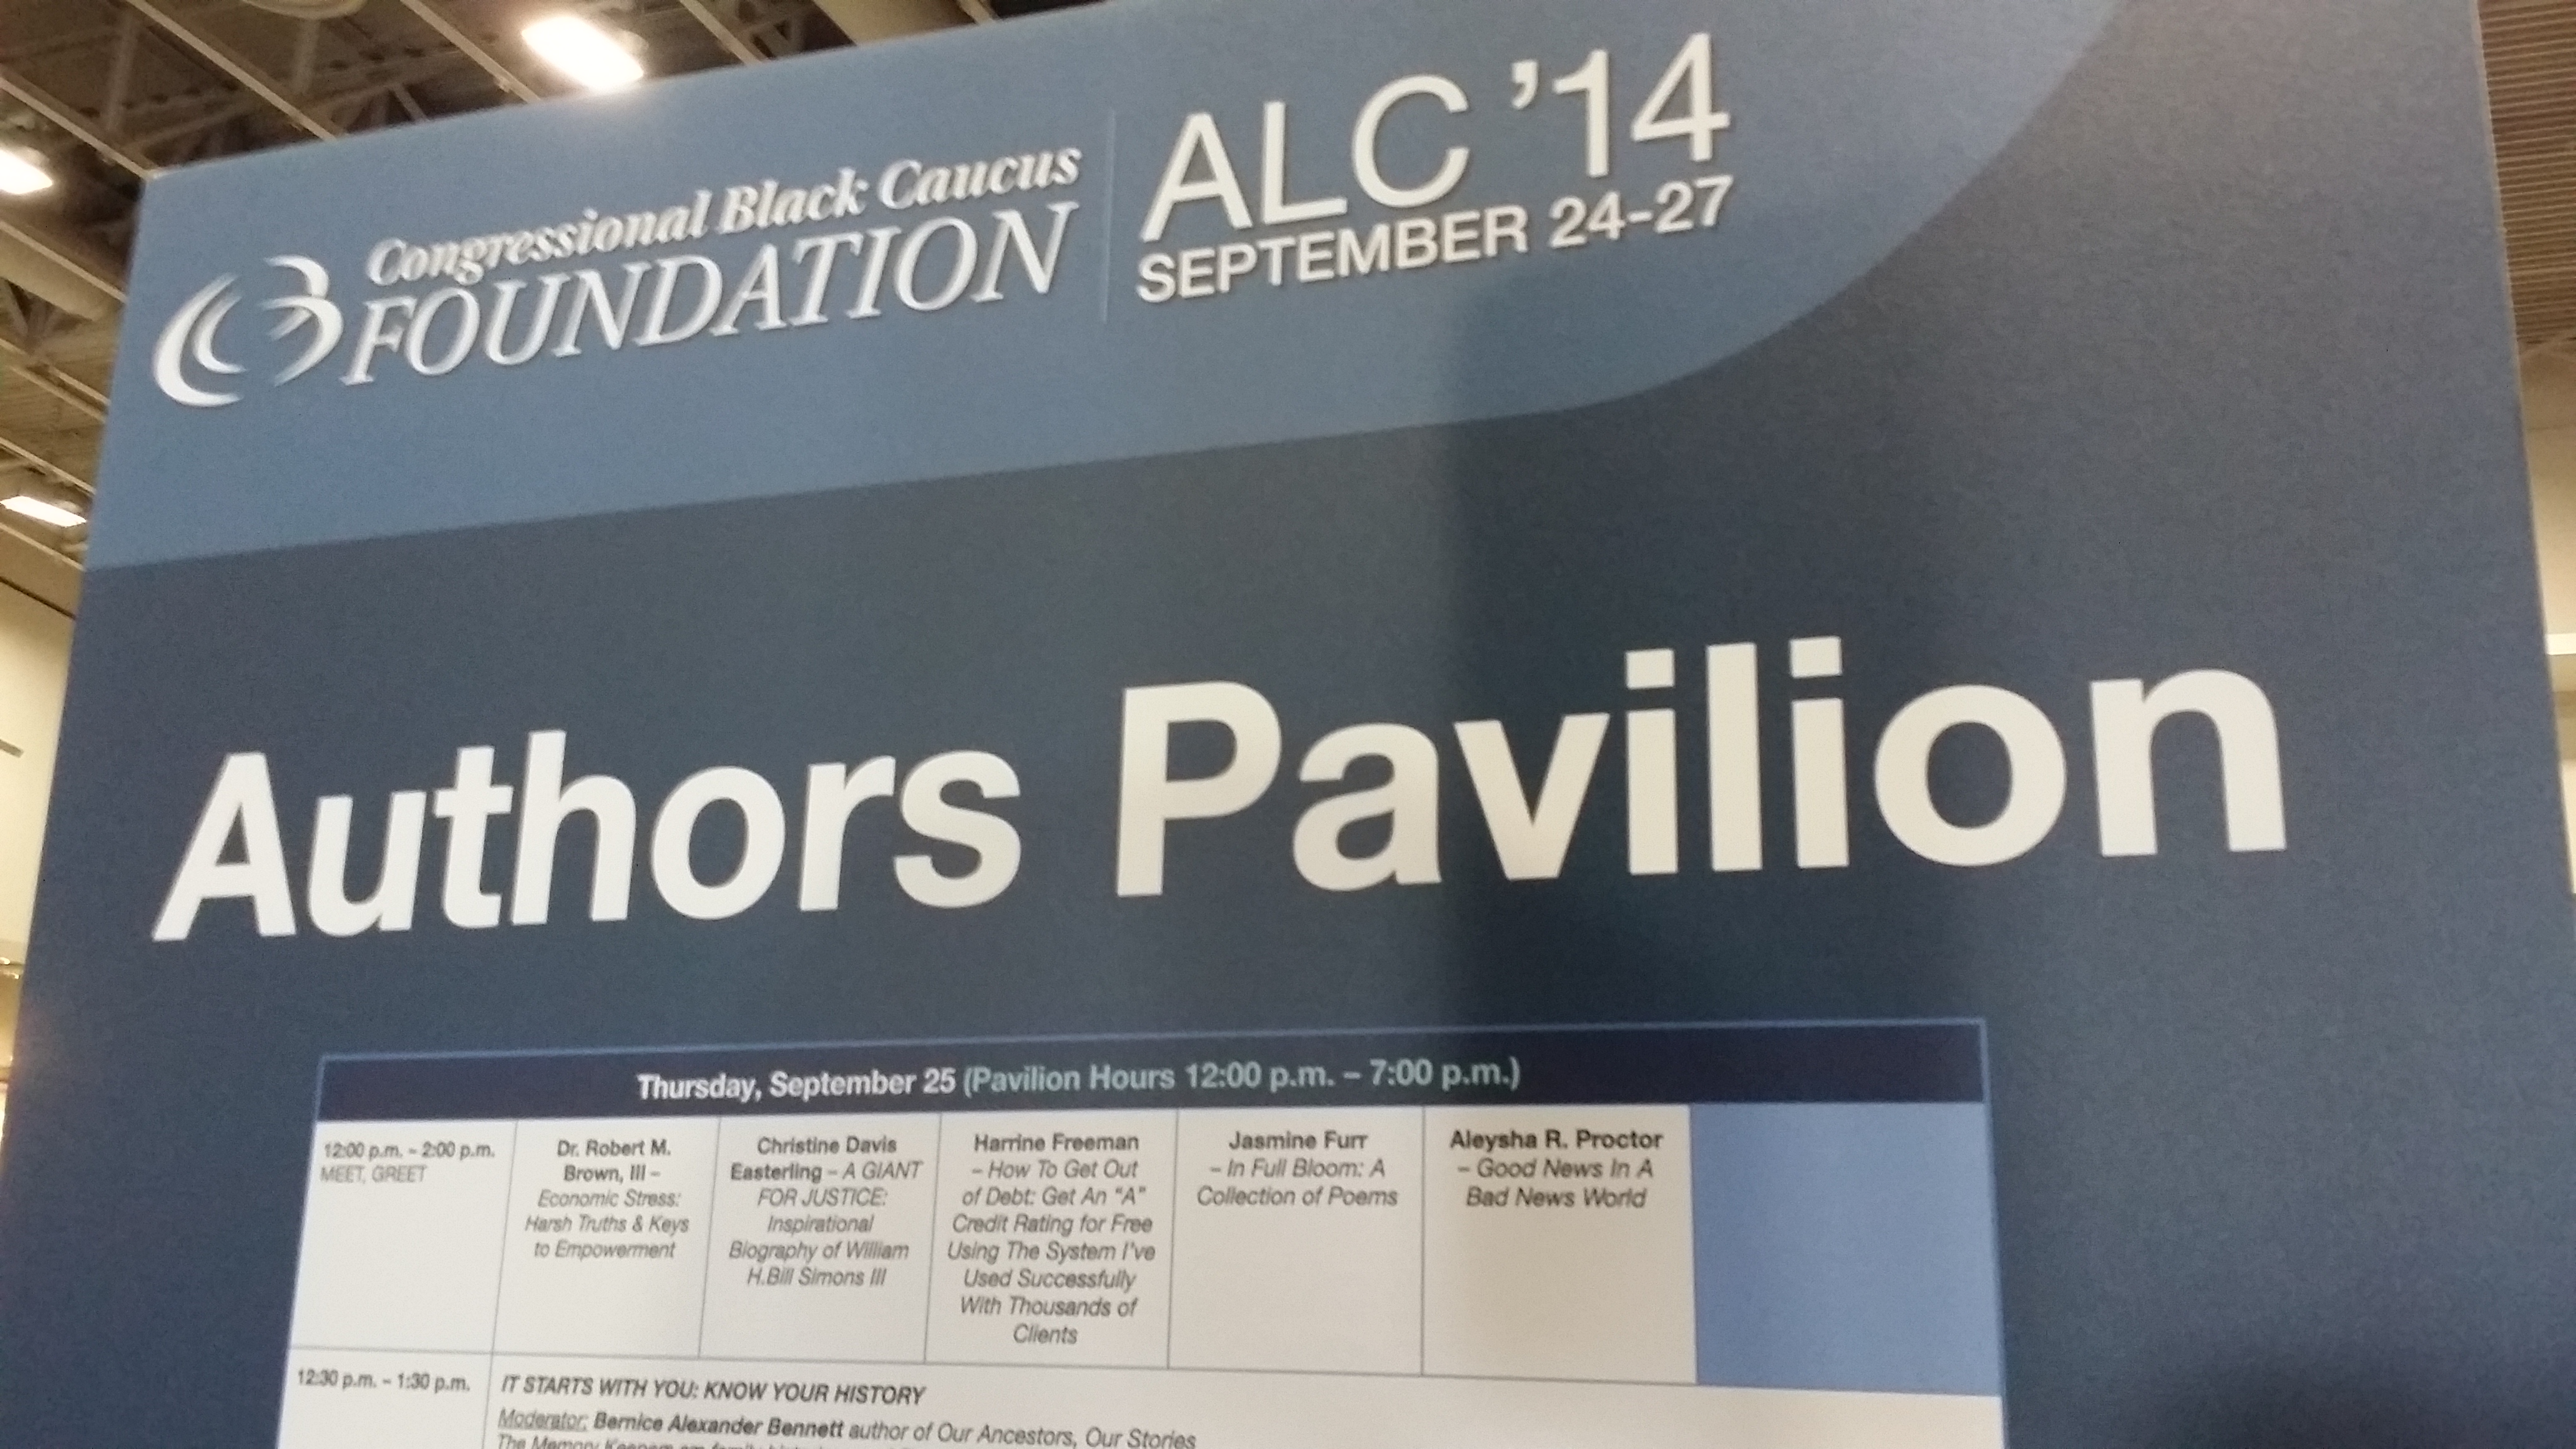 CBC ALC Author’s Pavilion 2014